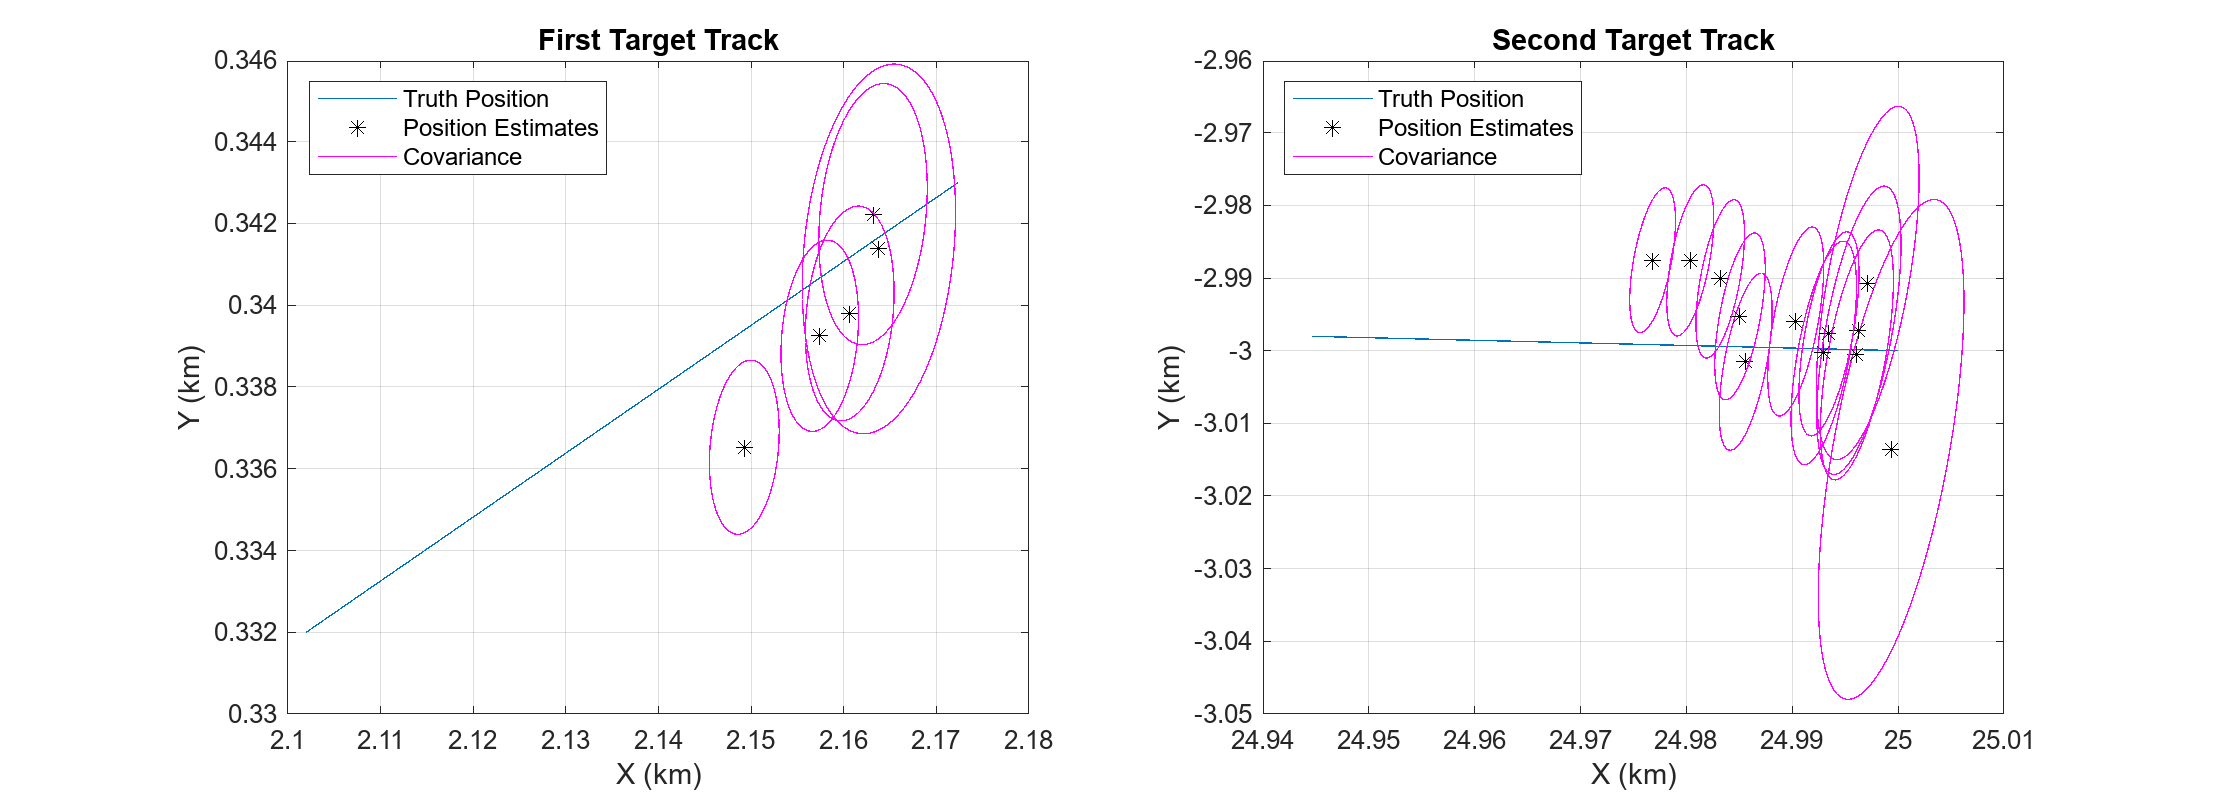 图中包含2个轴对象。标题为First Target Track的Axes对象1包含11个类型为line的对象。这些对象代表真理位置，位置估计，协方差。标题为Second Target Track的Axes对象2包含25个类型为line的对象。这些对象代表真理位置，位置估计，协方差。